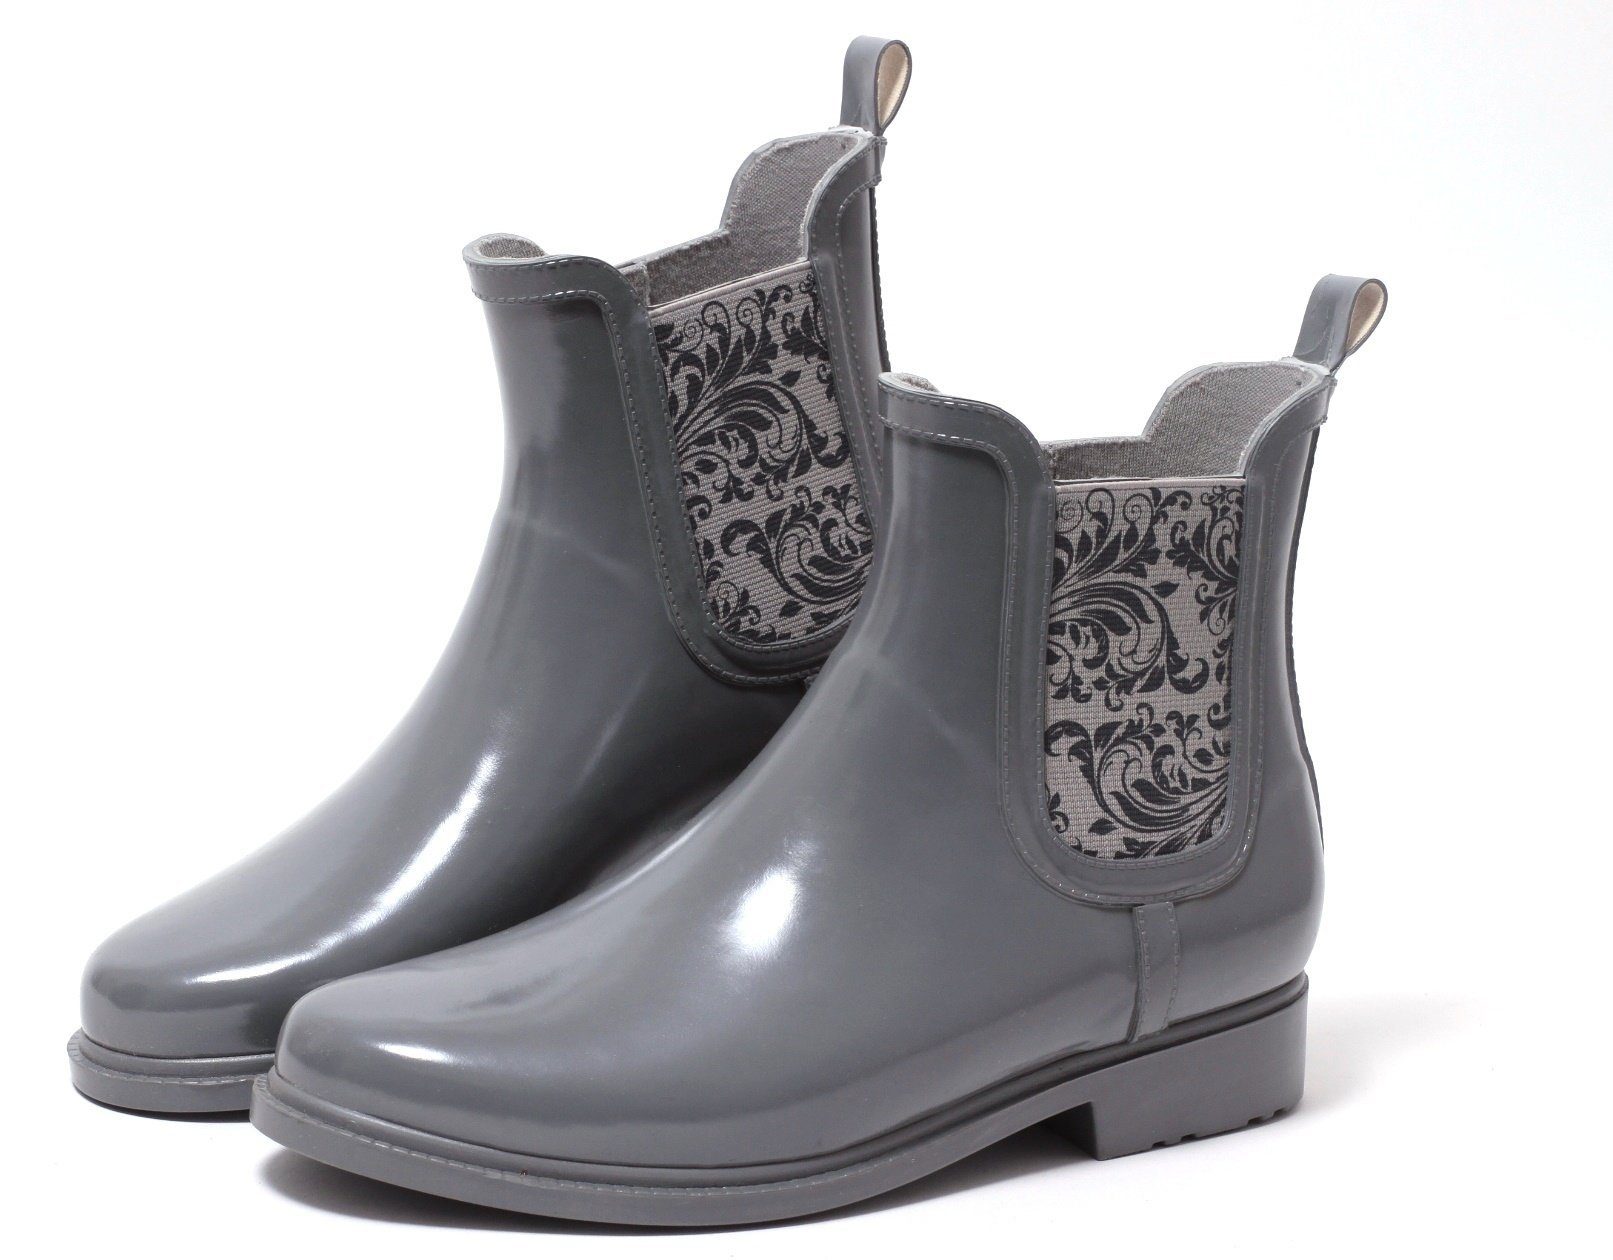 Zapato Chelseaboots Damen Regenstiefelette Gummistiefelette Damenstiefel  Chelsea Regen Boots grau online kaufen | OTTO